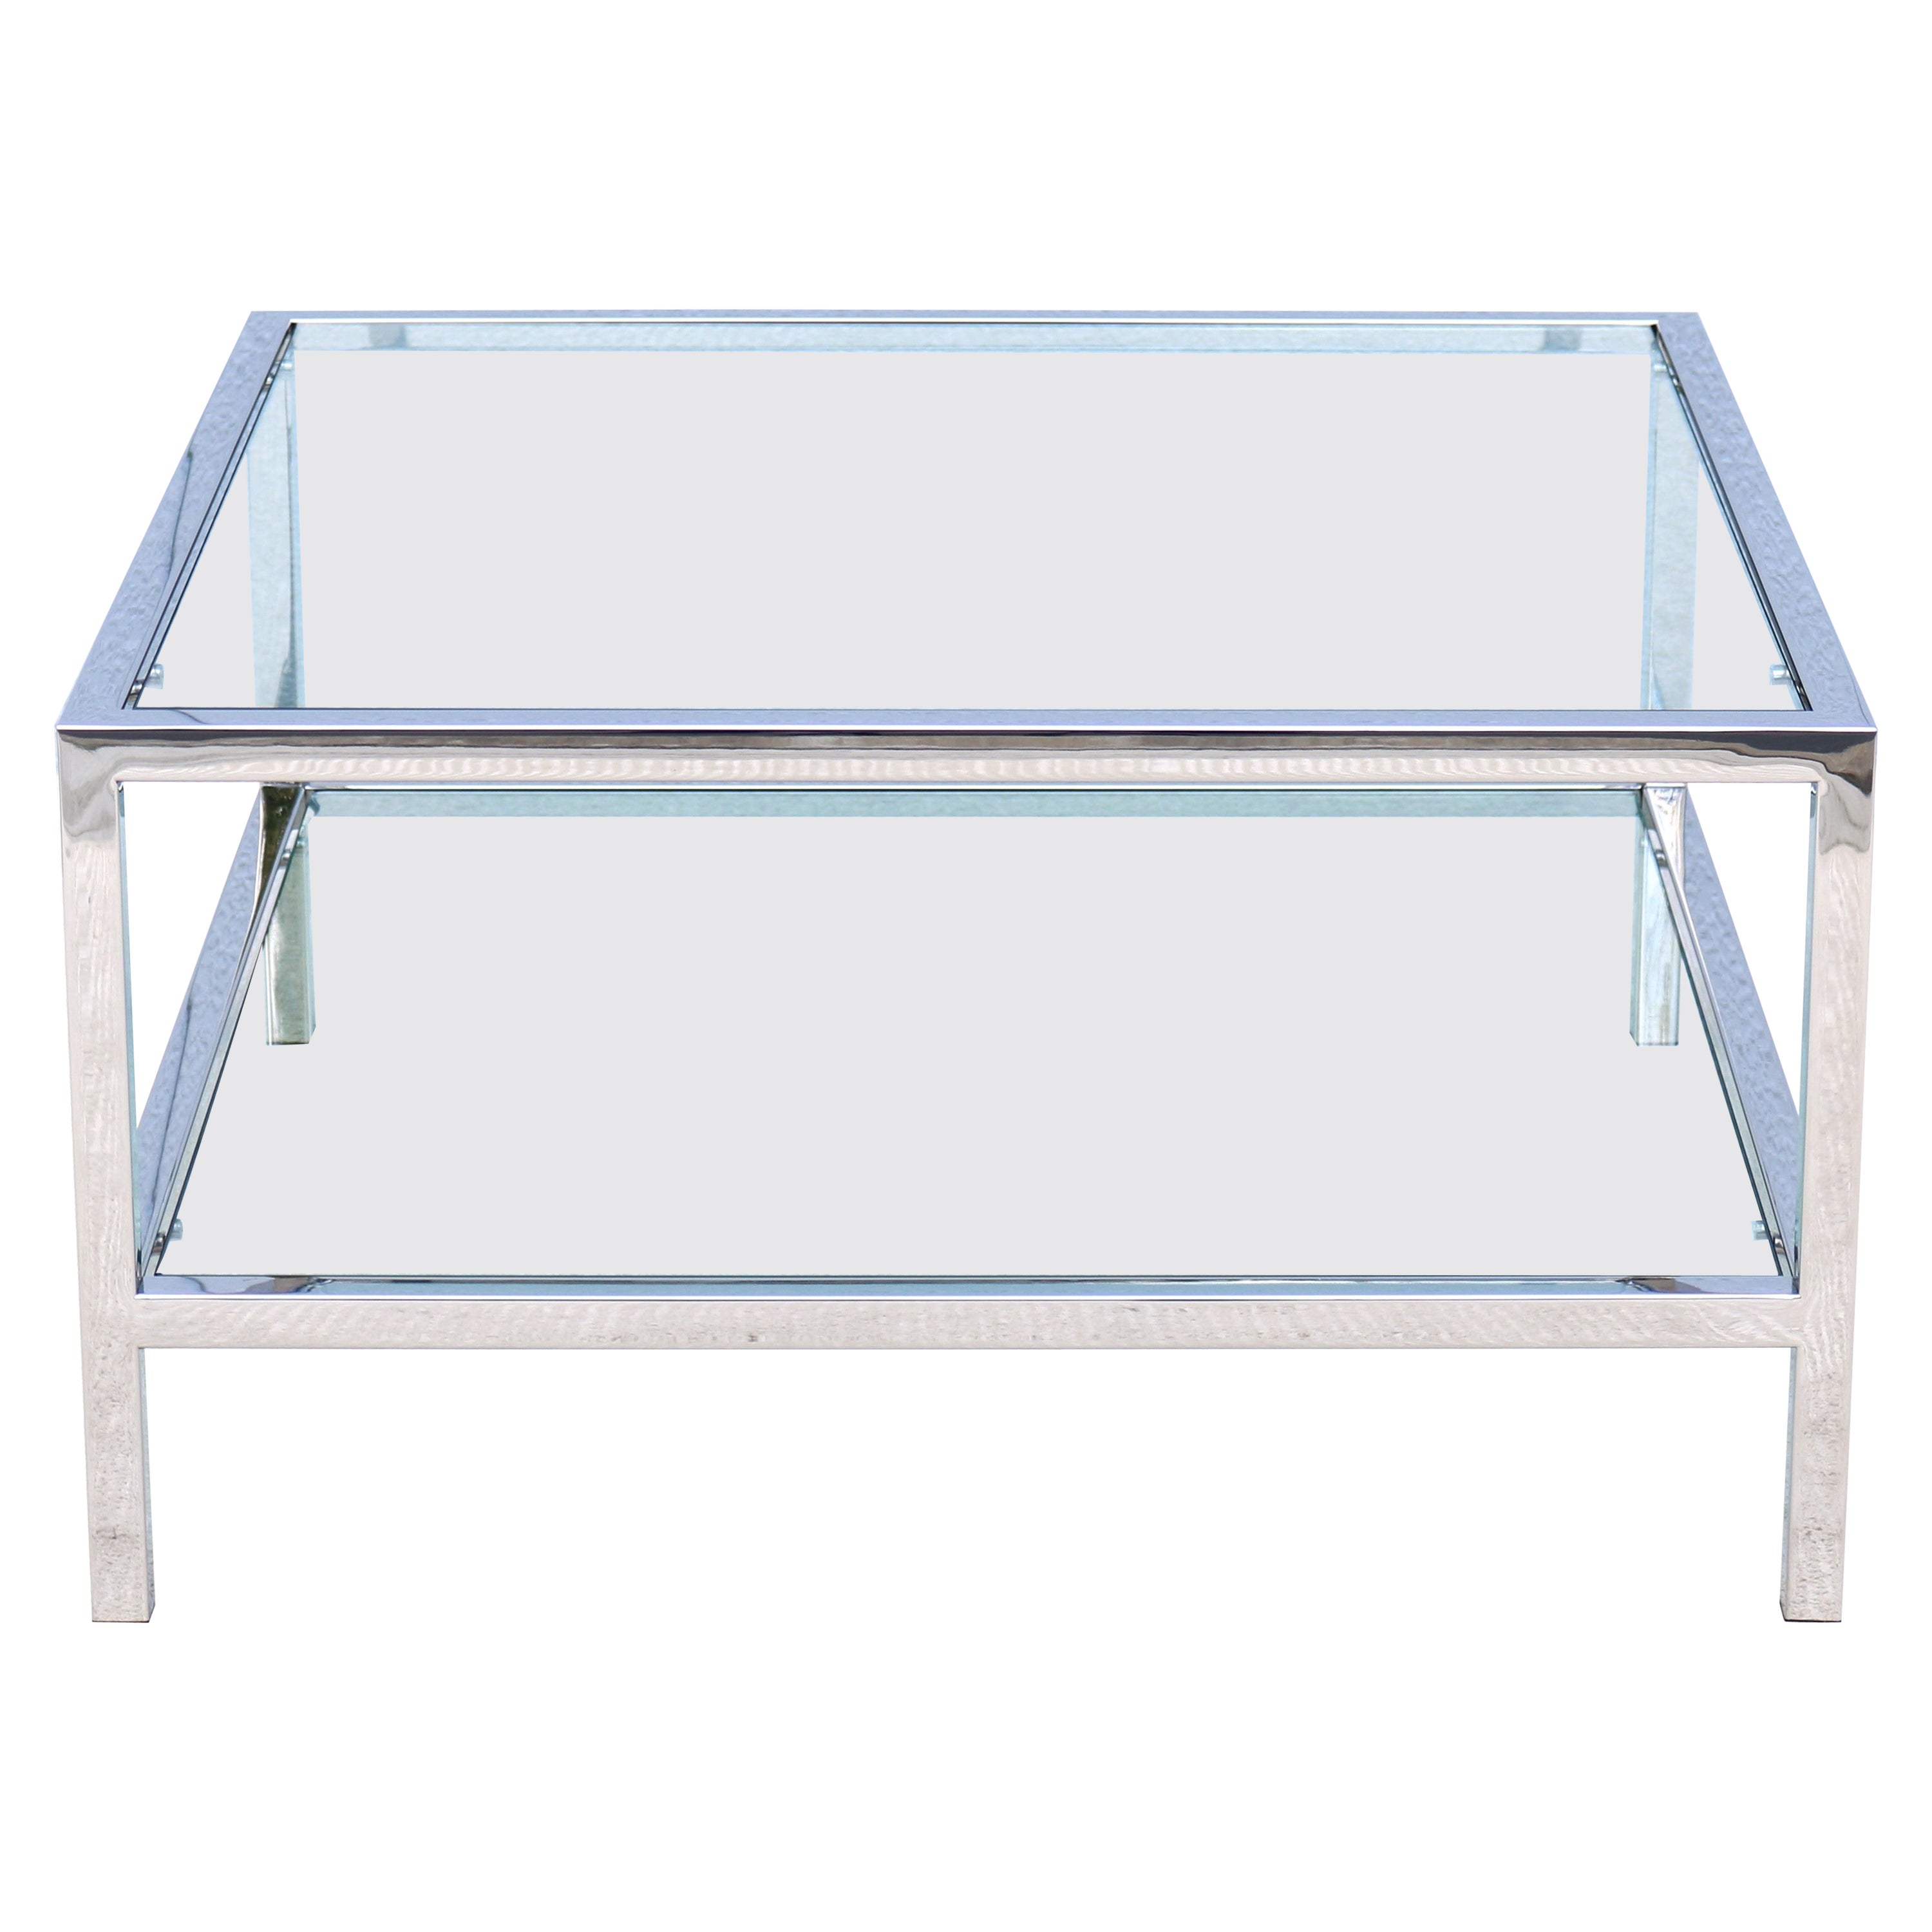 Modernisme du milieu du siècle dernier style Milo Baughman table basse carrée en verre avec étagère